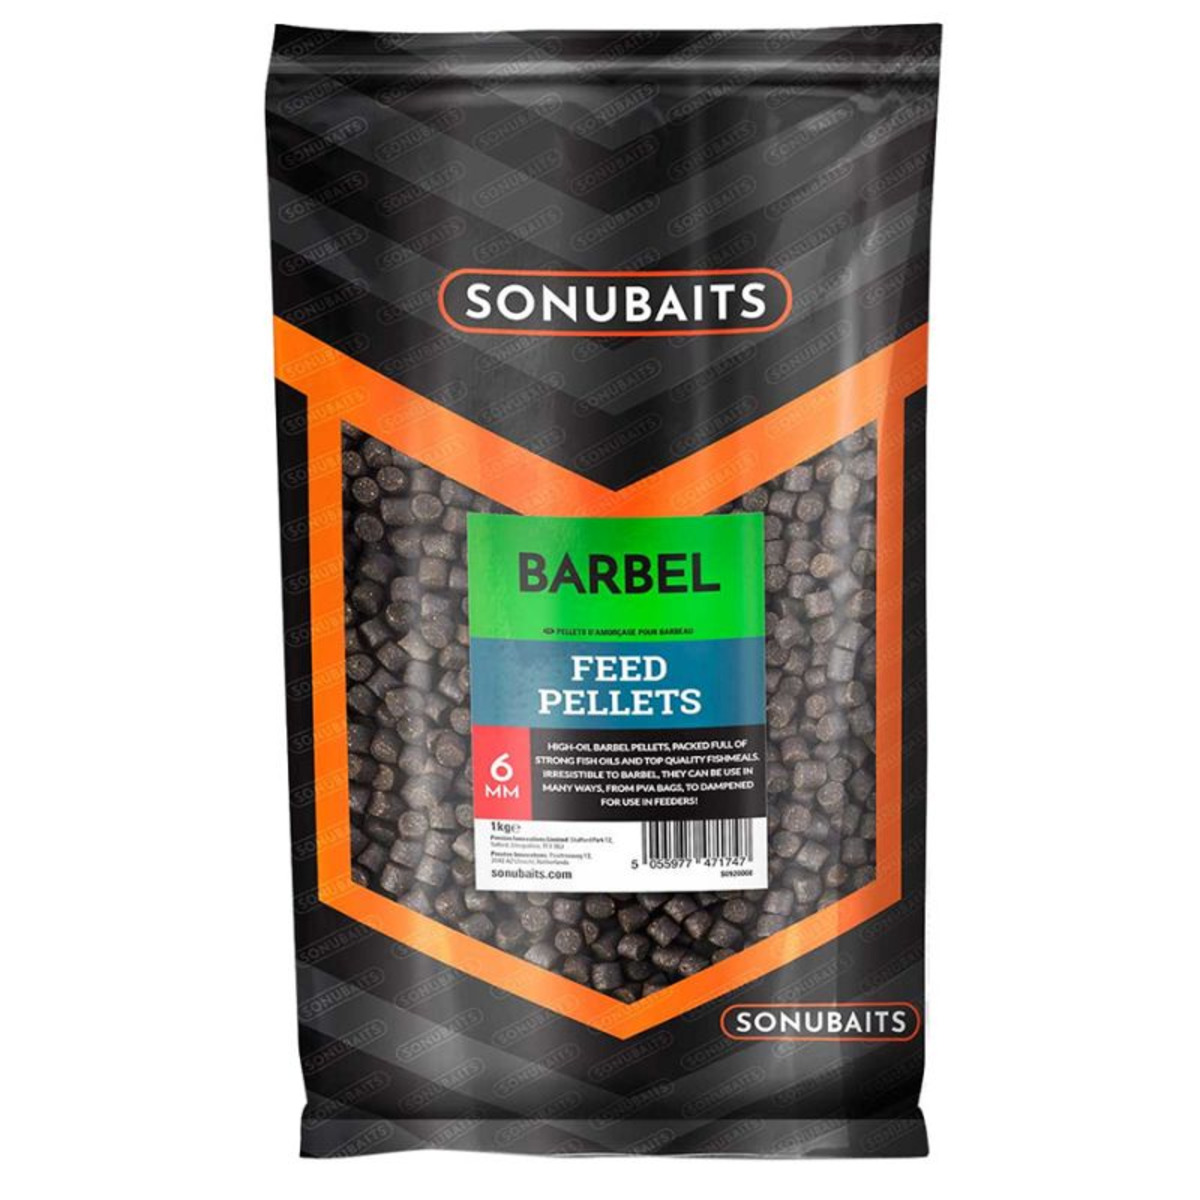 Sonubaits Barbel Feed Pellets - 6 mm - 1 kg